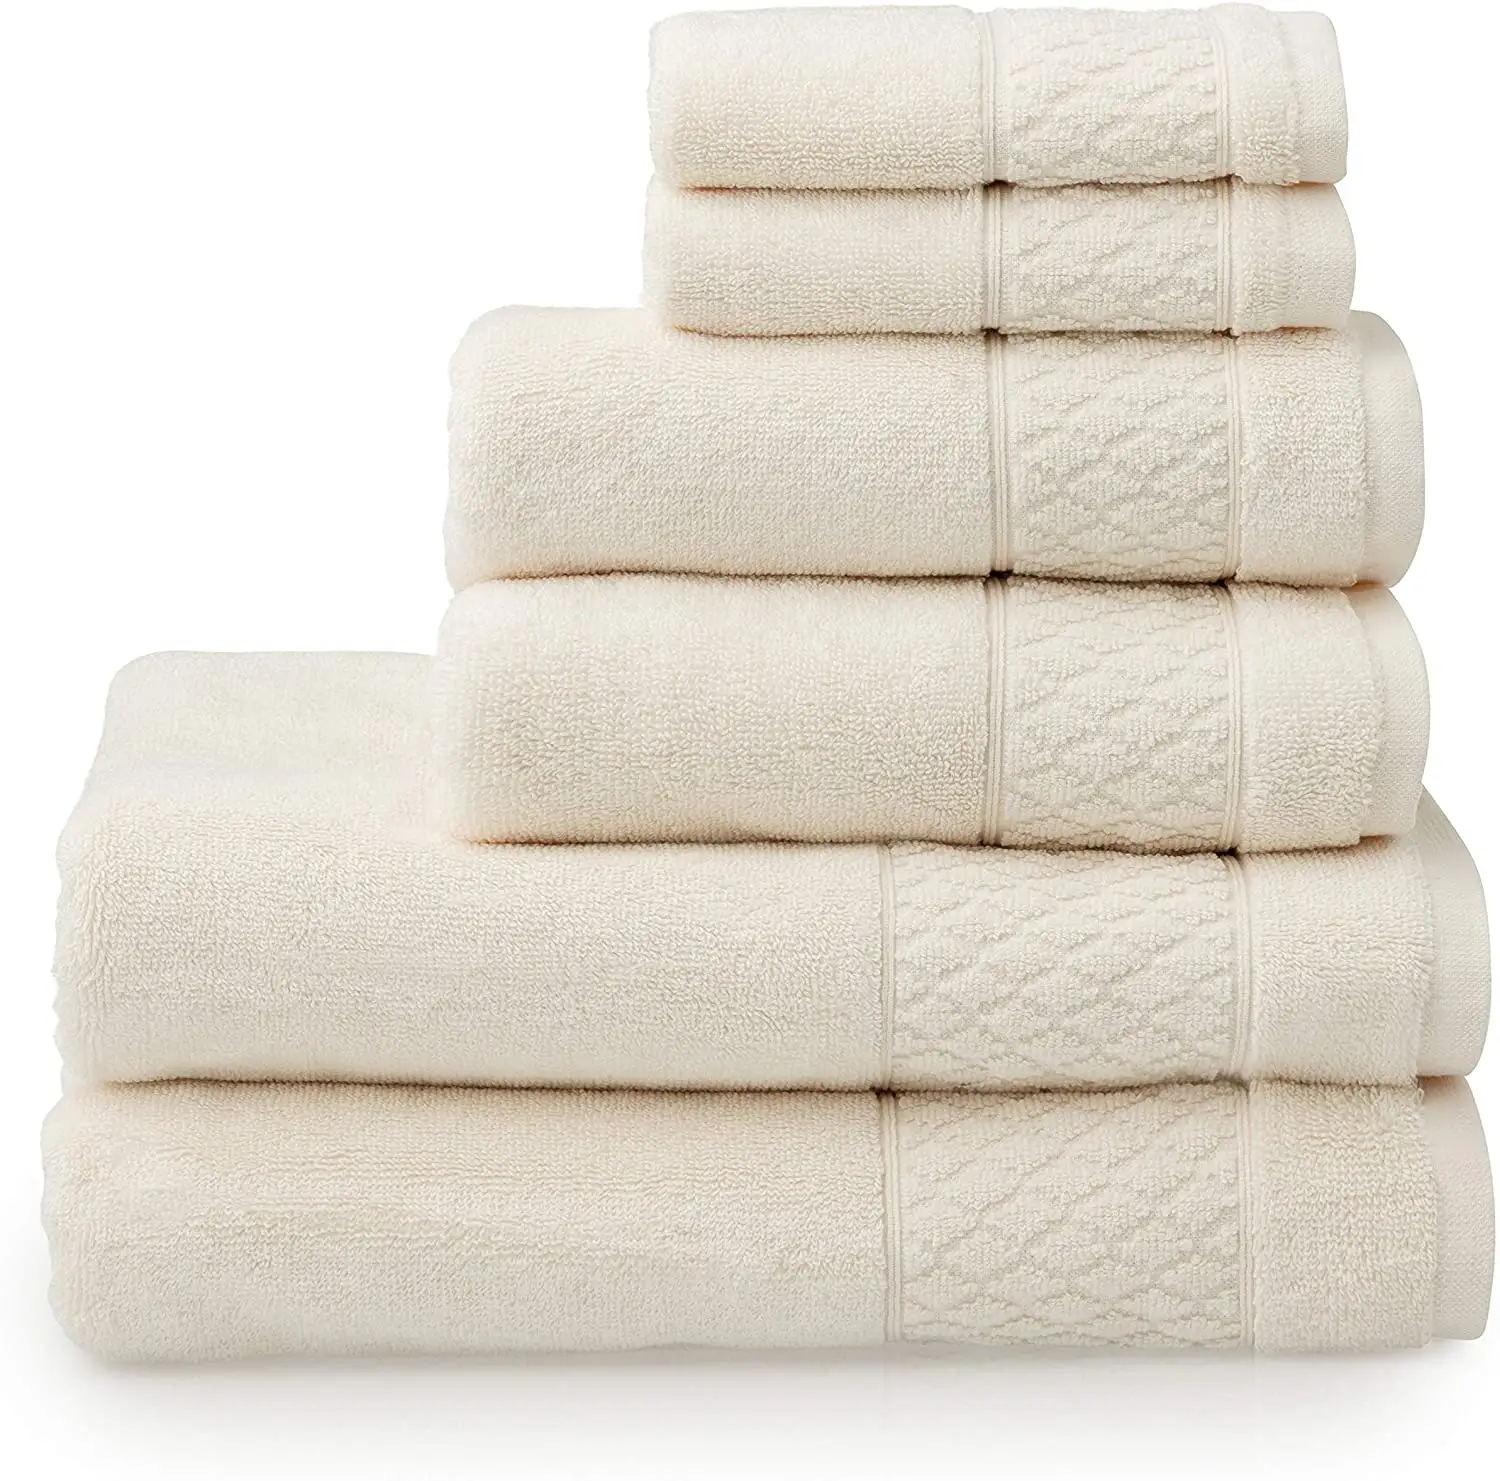 Juego de toallas de baño de algodón orgánico 100%, toallitas cómodas y baratas de lujo, respetuosas con el medio ambiente, OEM